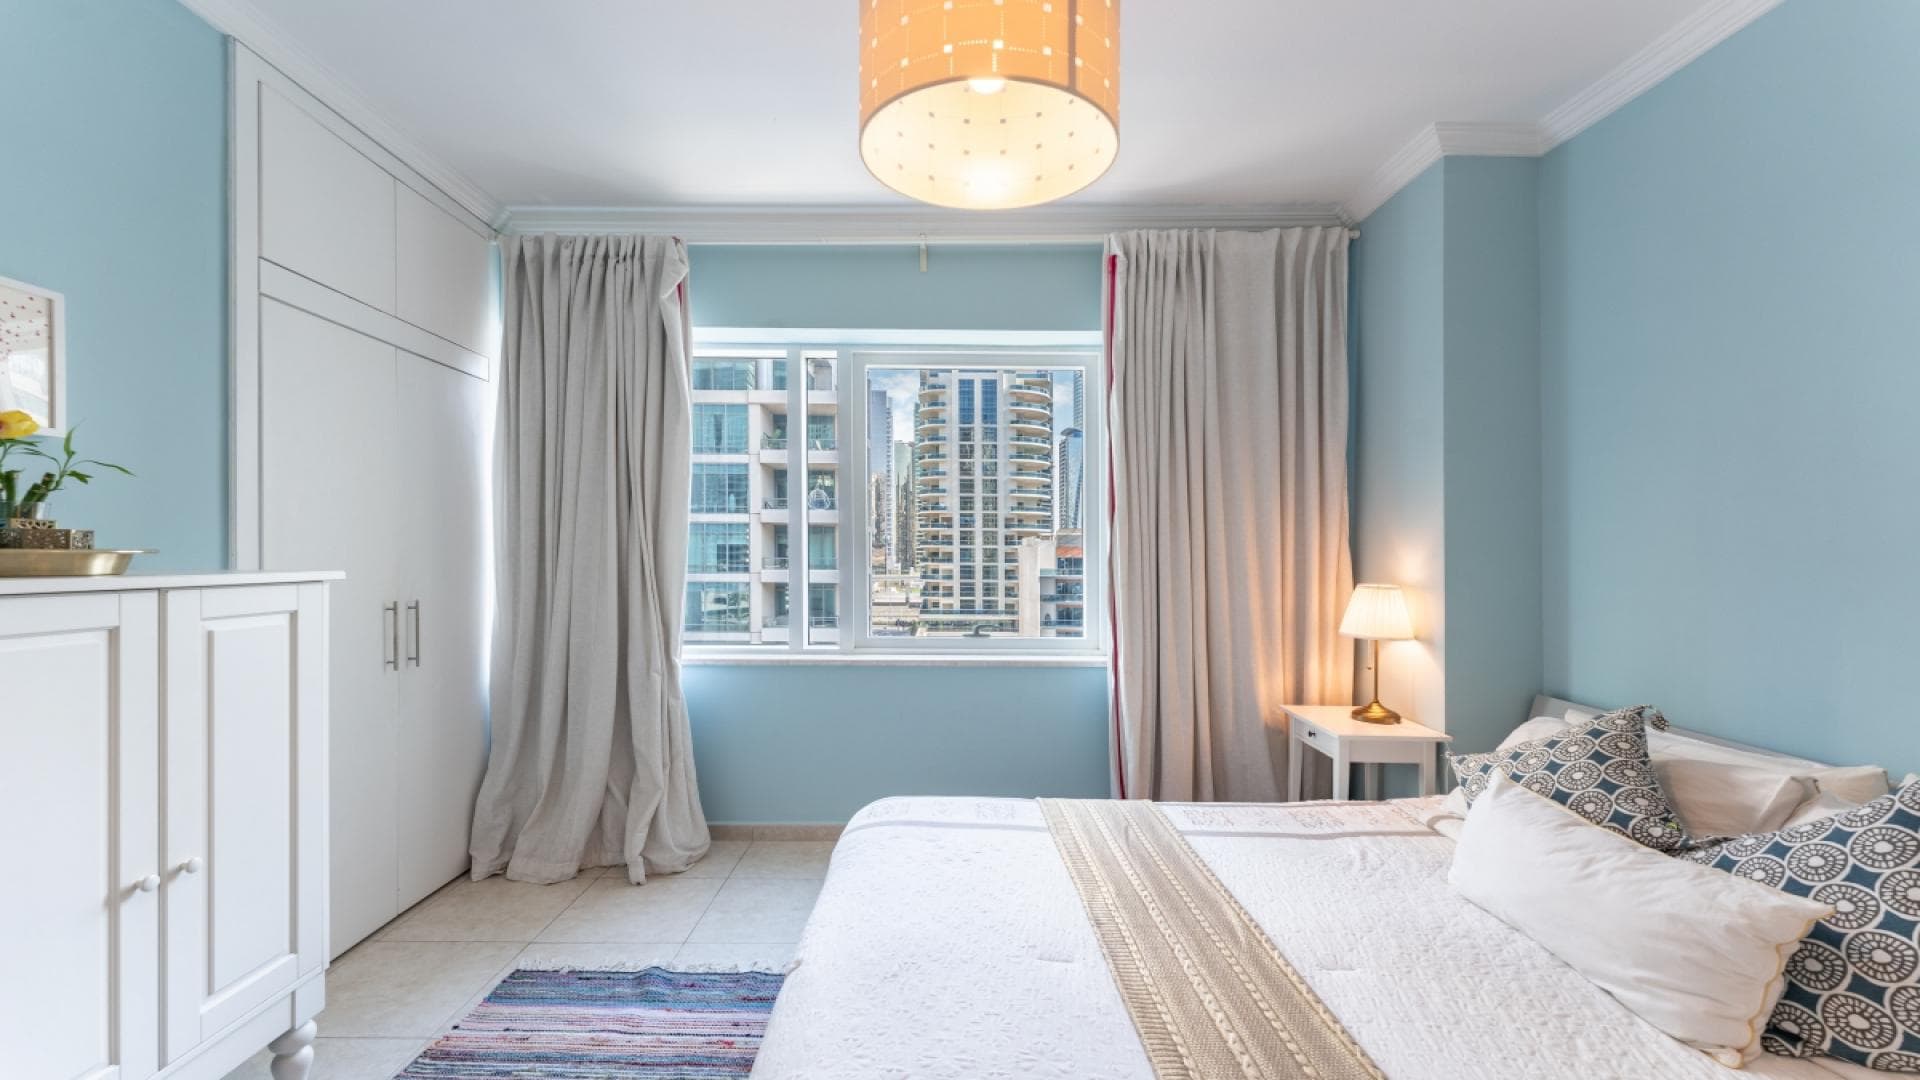 4 Bedroom Apartment For Rent Al Thamam 33 Lp38759 2fe823d33f009400.jpg